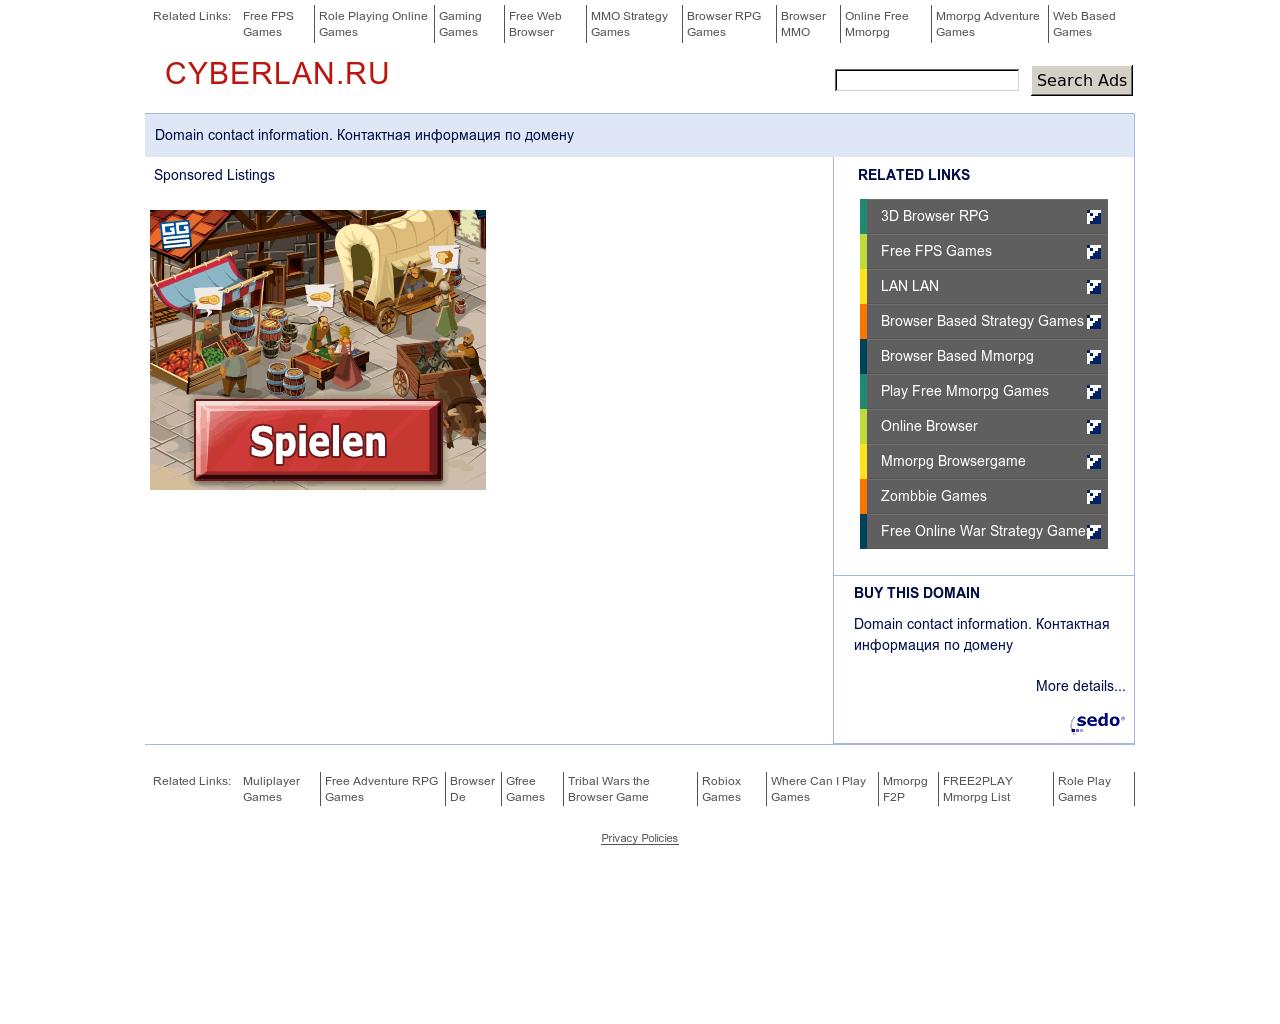 Изображение сайта cyberlan.ru в разрешении 1280x1024